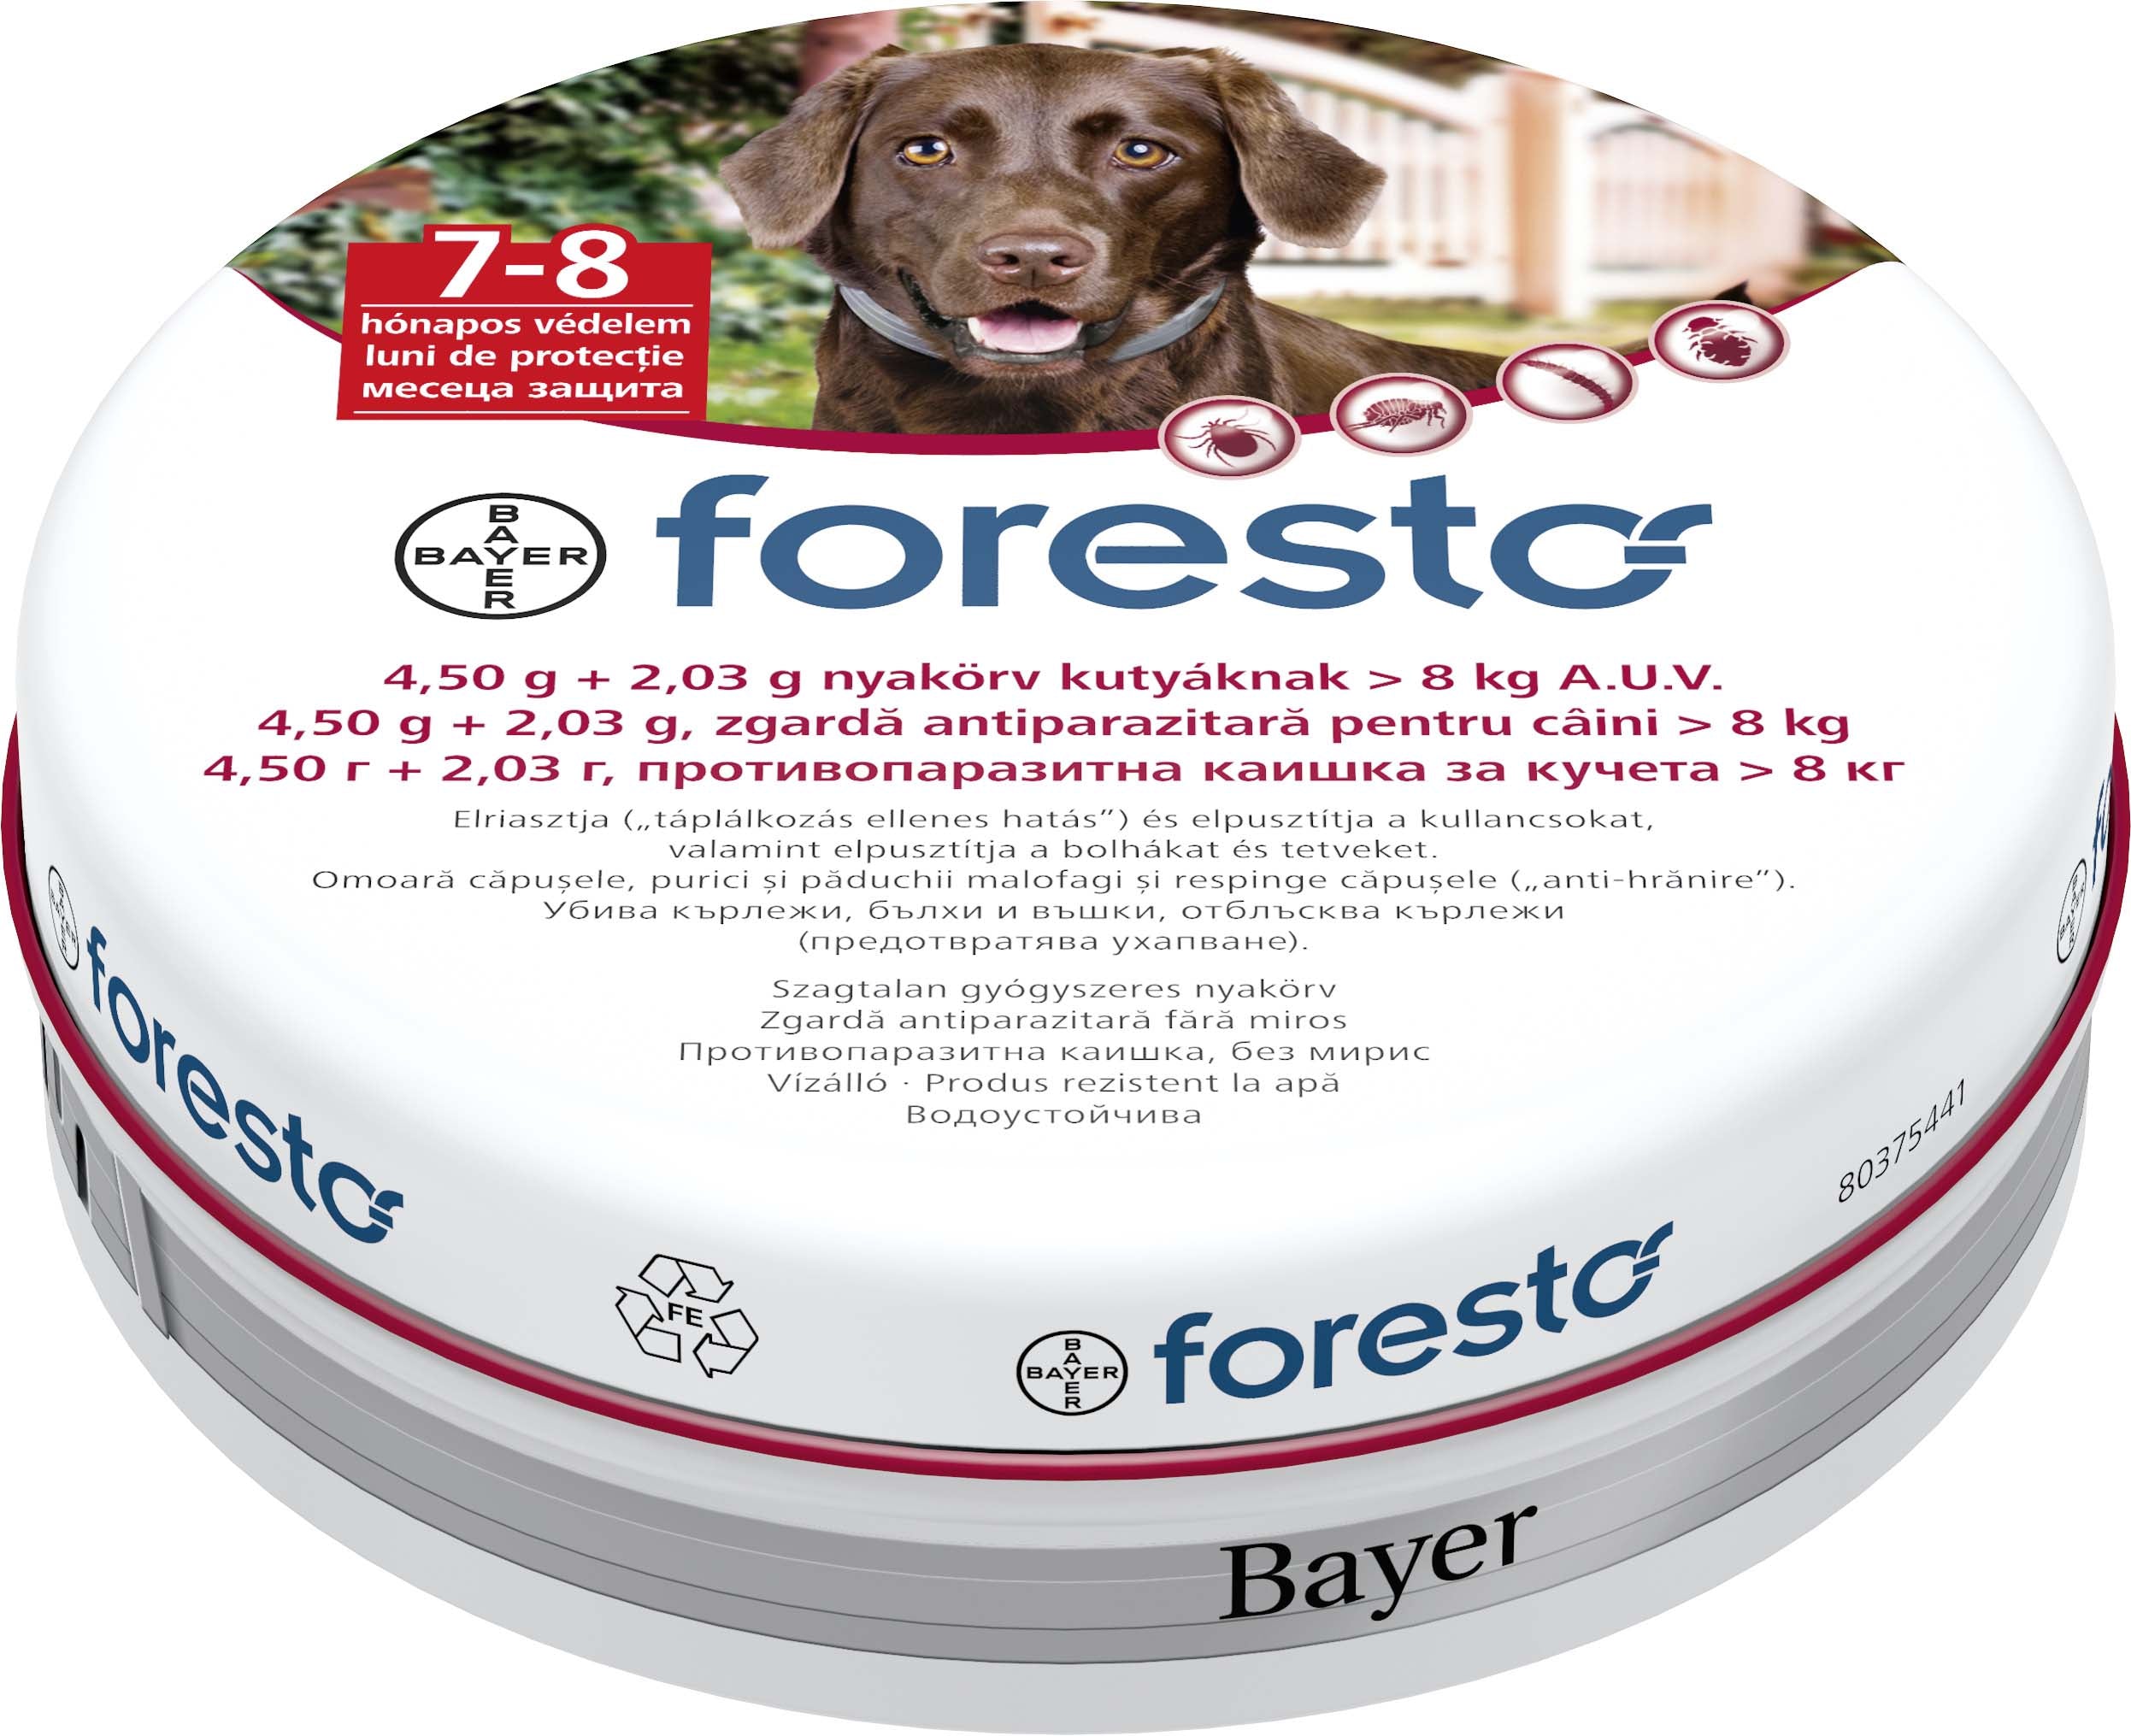 Foresto zgardă antiparazitară pentru câini de talie medie şi mare (8kg)